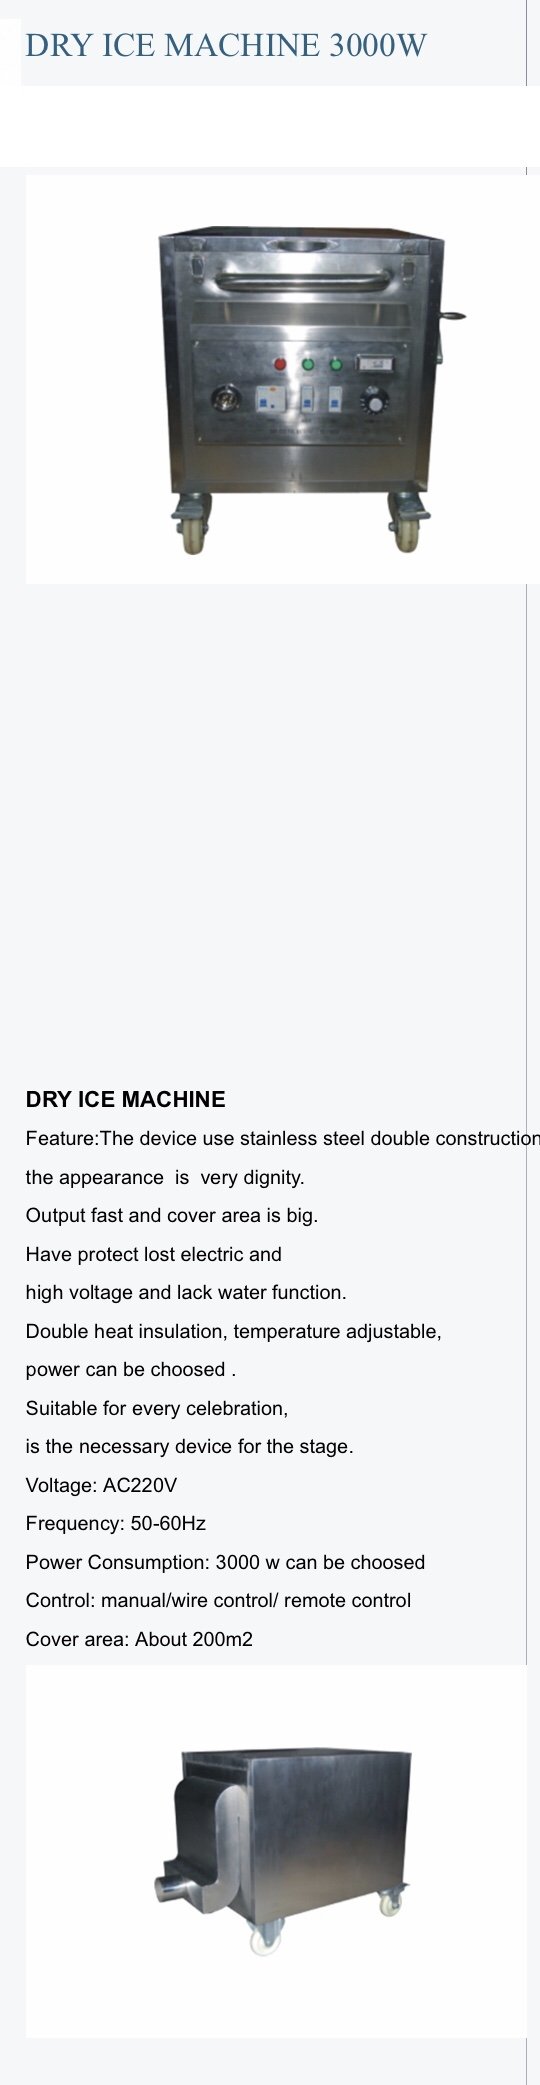 Dry Ice 3000 w